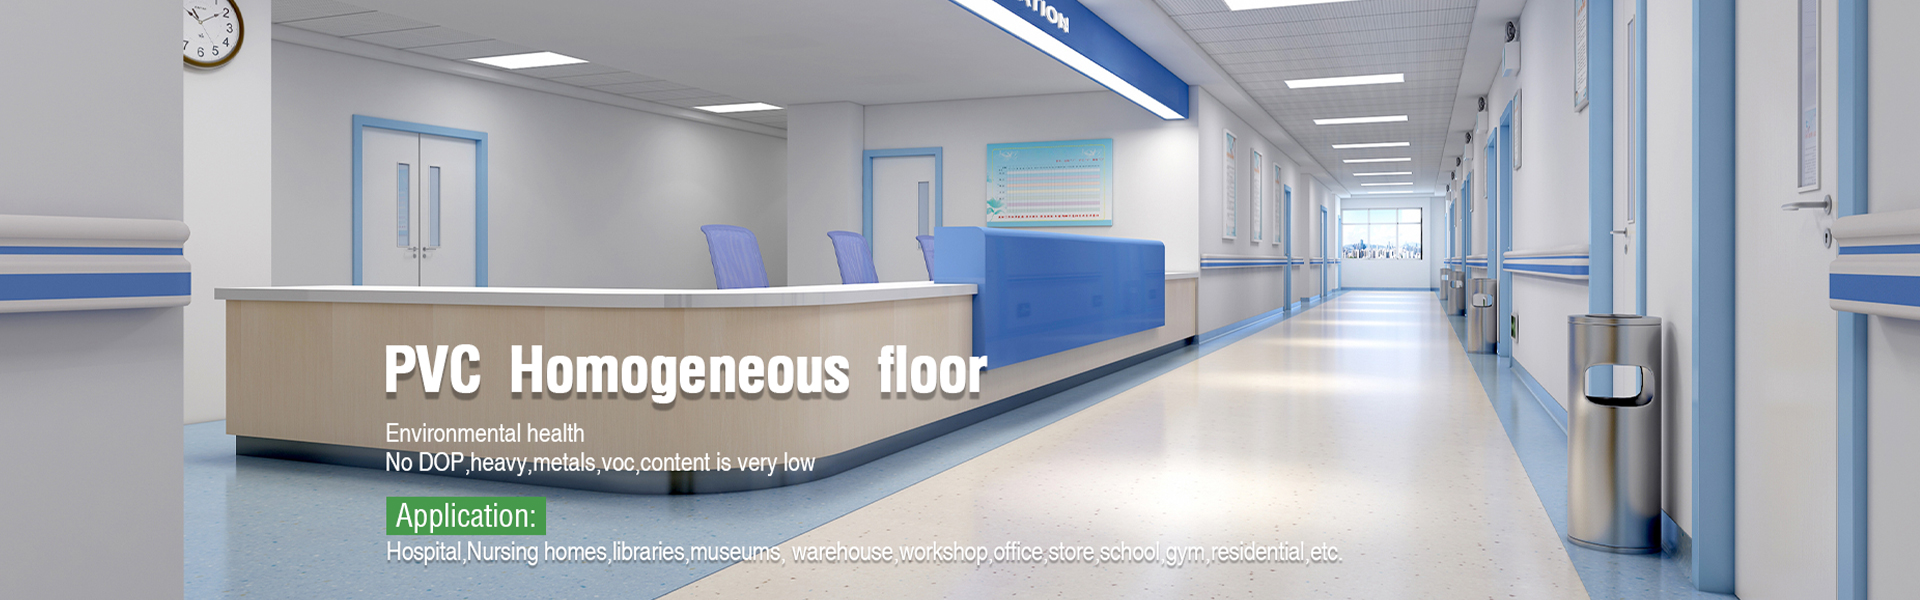 Homogeneous flooring for hospital